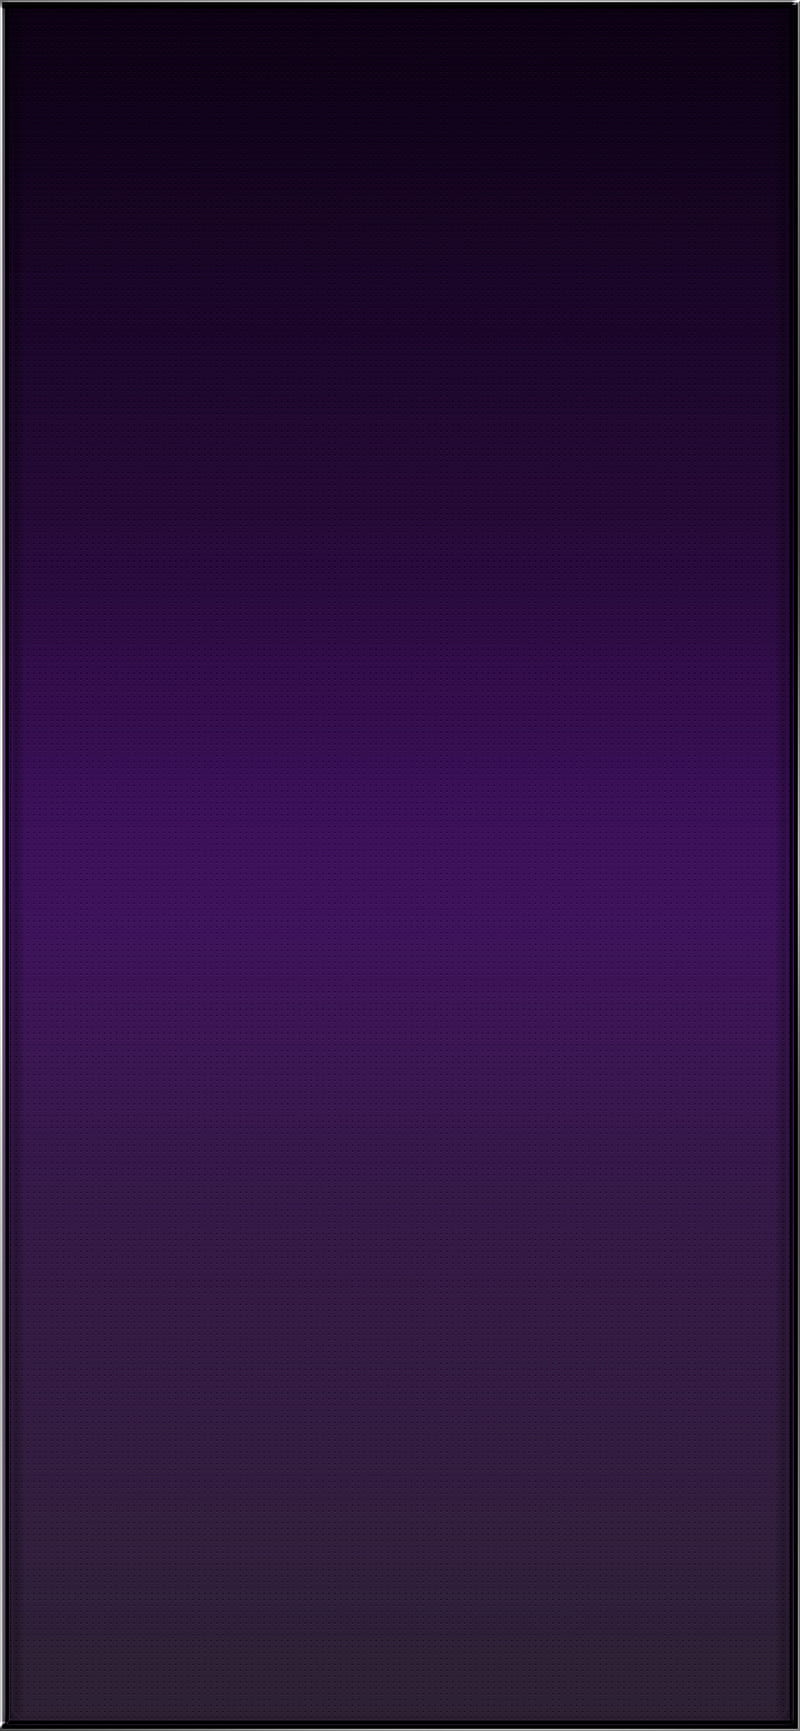 Đẹp đến ngỡ ngàng! Bạn muốn có một hình nền chất lượng HD cho chiếc iPhone 11/12 của mình? Đừng bỏ lỡ background tuyệt đẹp với màu tím tuyệt đẹp này. Nó sẽ khiến chiếc điện thoại của bạn trở nên độc đáo hơn bao giờ hết!